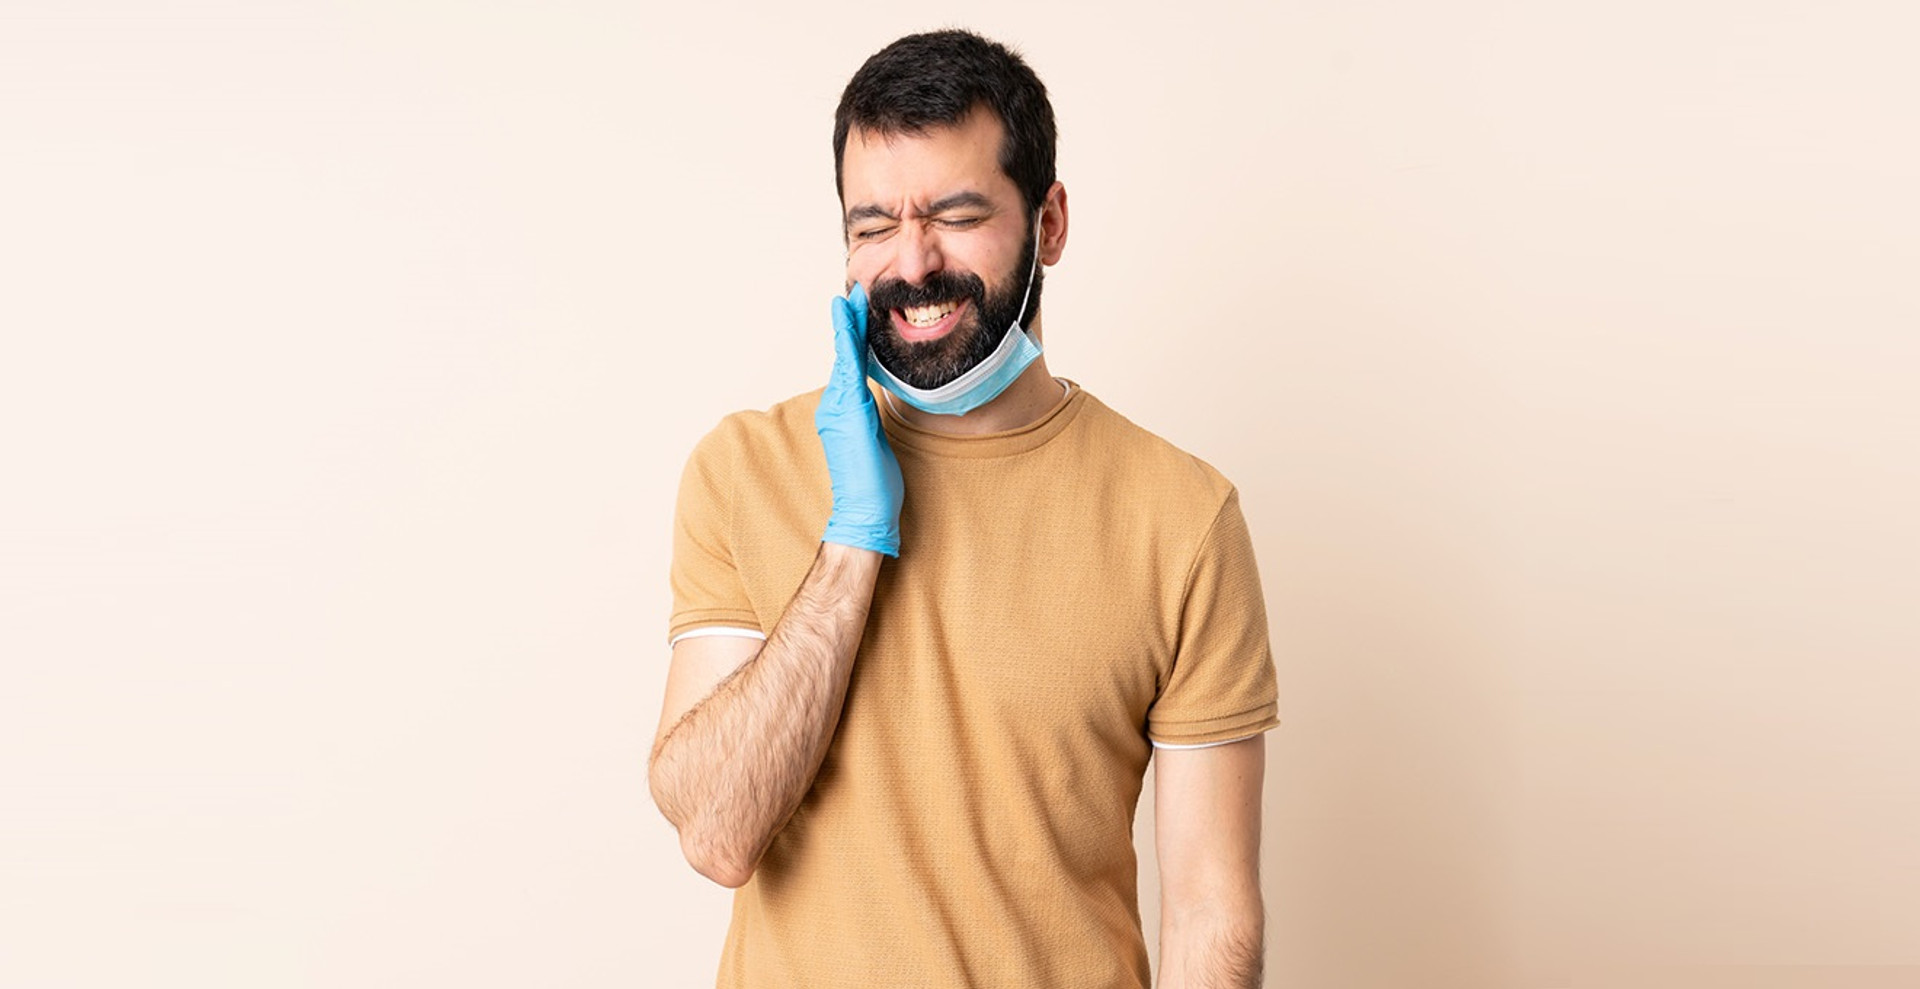 Чи може якісна гігієна рота знизити ризики пов’язані з COVID-19? Пояснення стоматолога